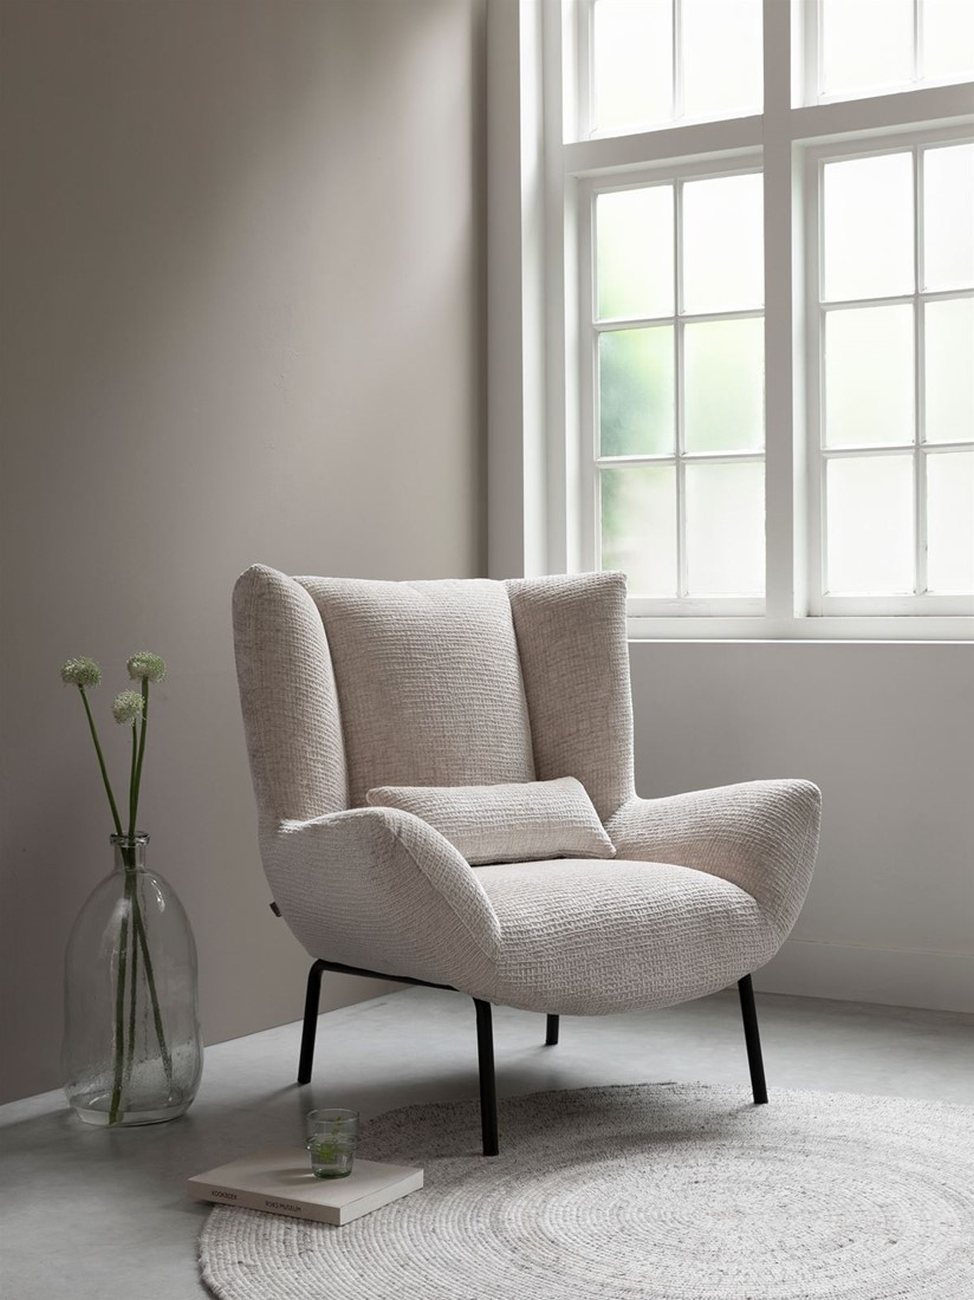 Der Sessel Astro überzeugt mit seinem modernen Design. Gefertigt wurde er aus Stoff, welcher einen natürlichen Farbton besitzt. Das Gestell ist aus Metall und hat eine schwarze Farbe. Der Sessel besitzt eine Größe von 97x92x96 cm.